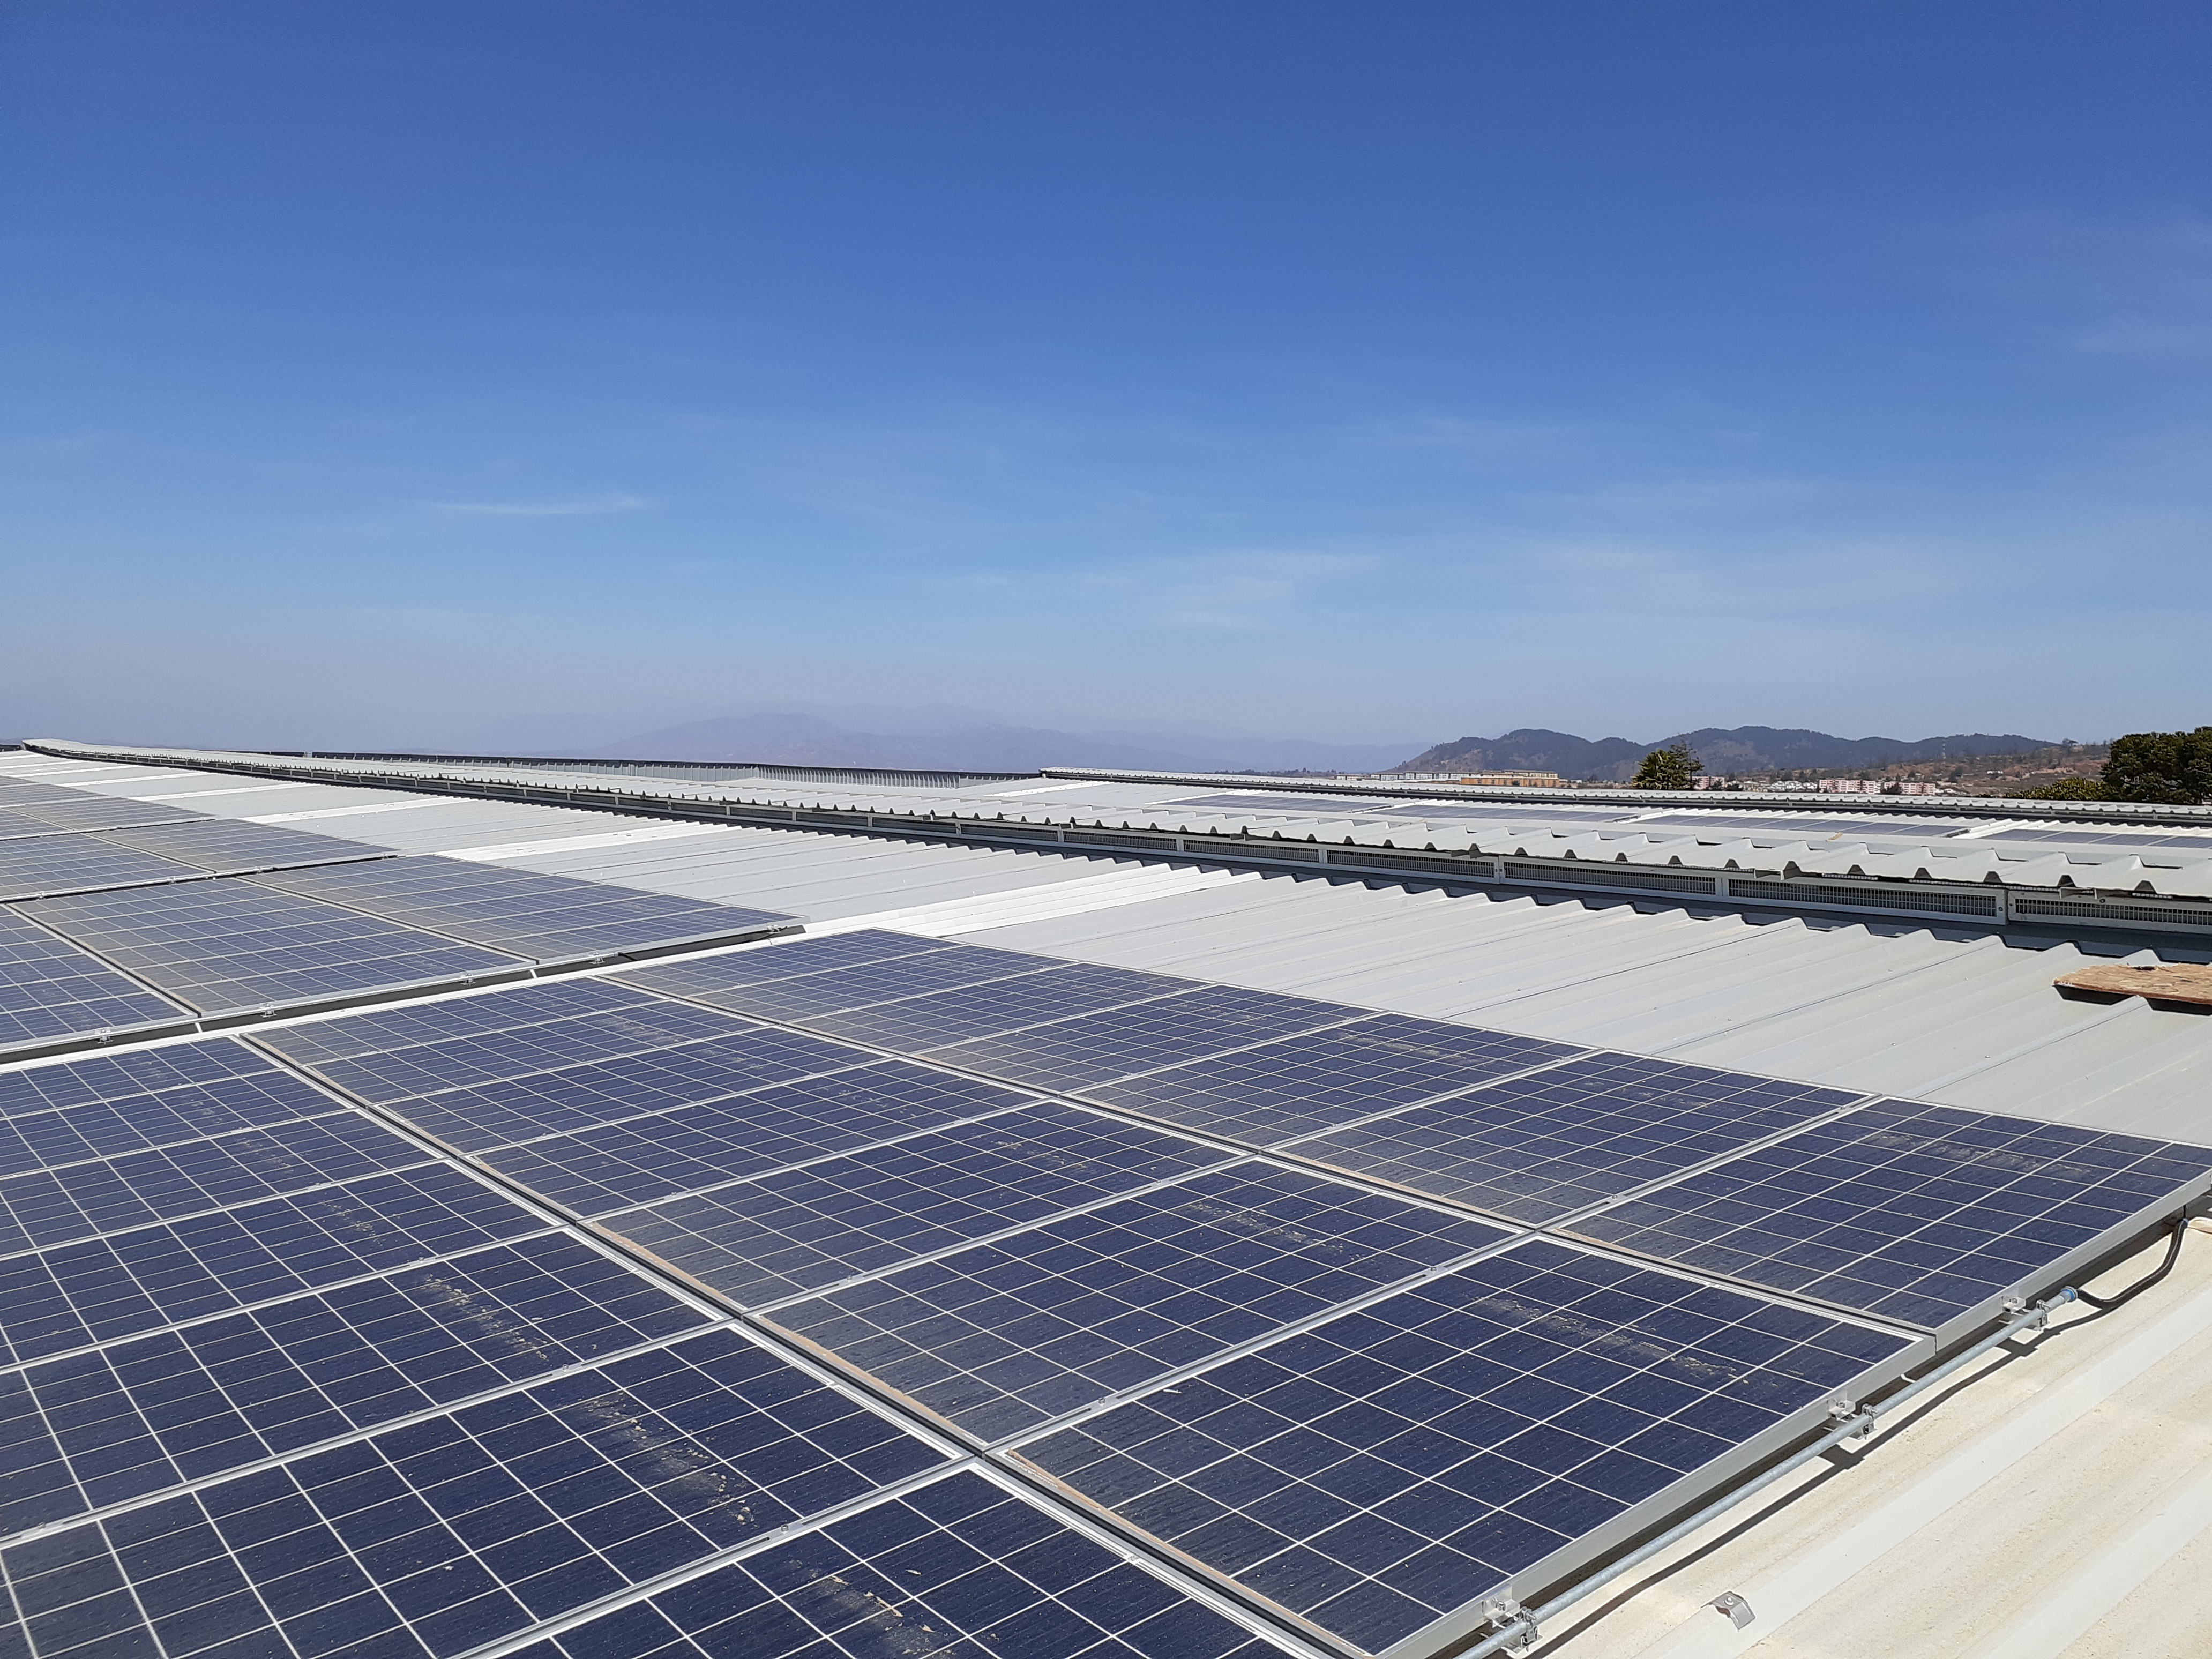 Seremi de Energía visita instalaciones de RHONA en Viña del Mar y conoce su planta fotovoltaica